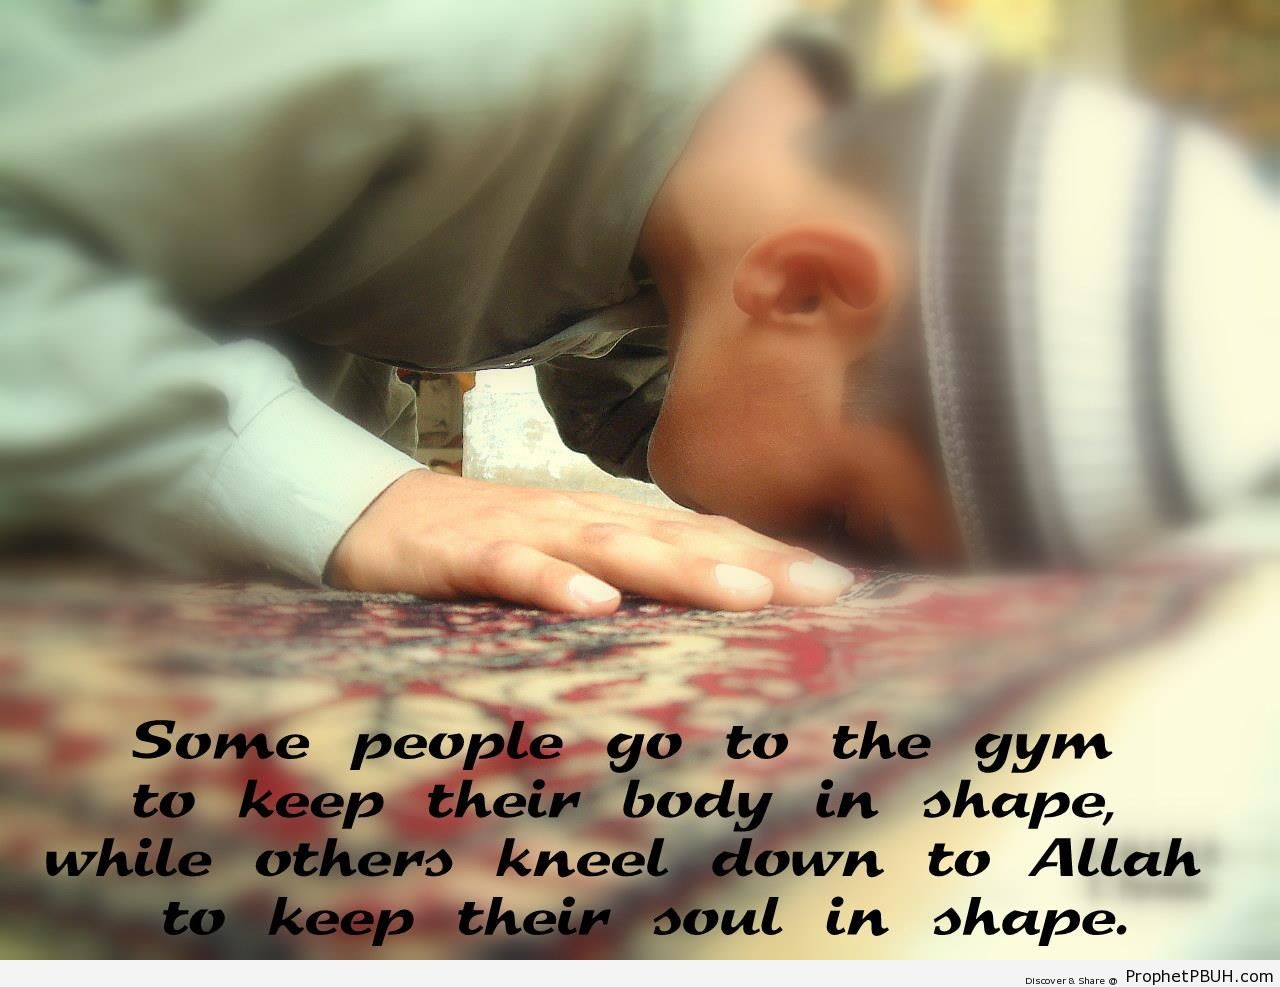 Keeping in shape - Photos of Muslim People -